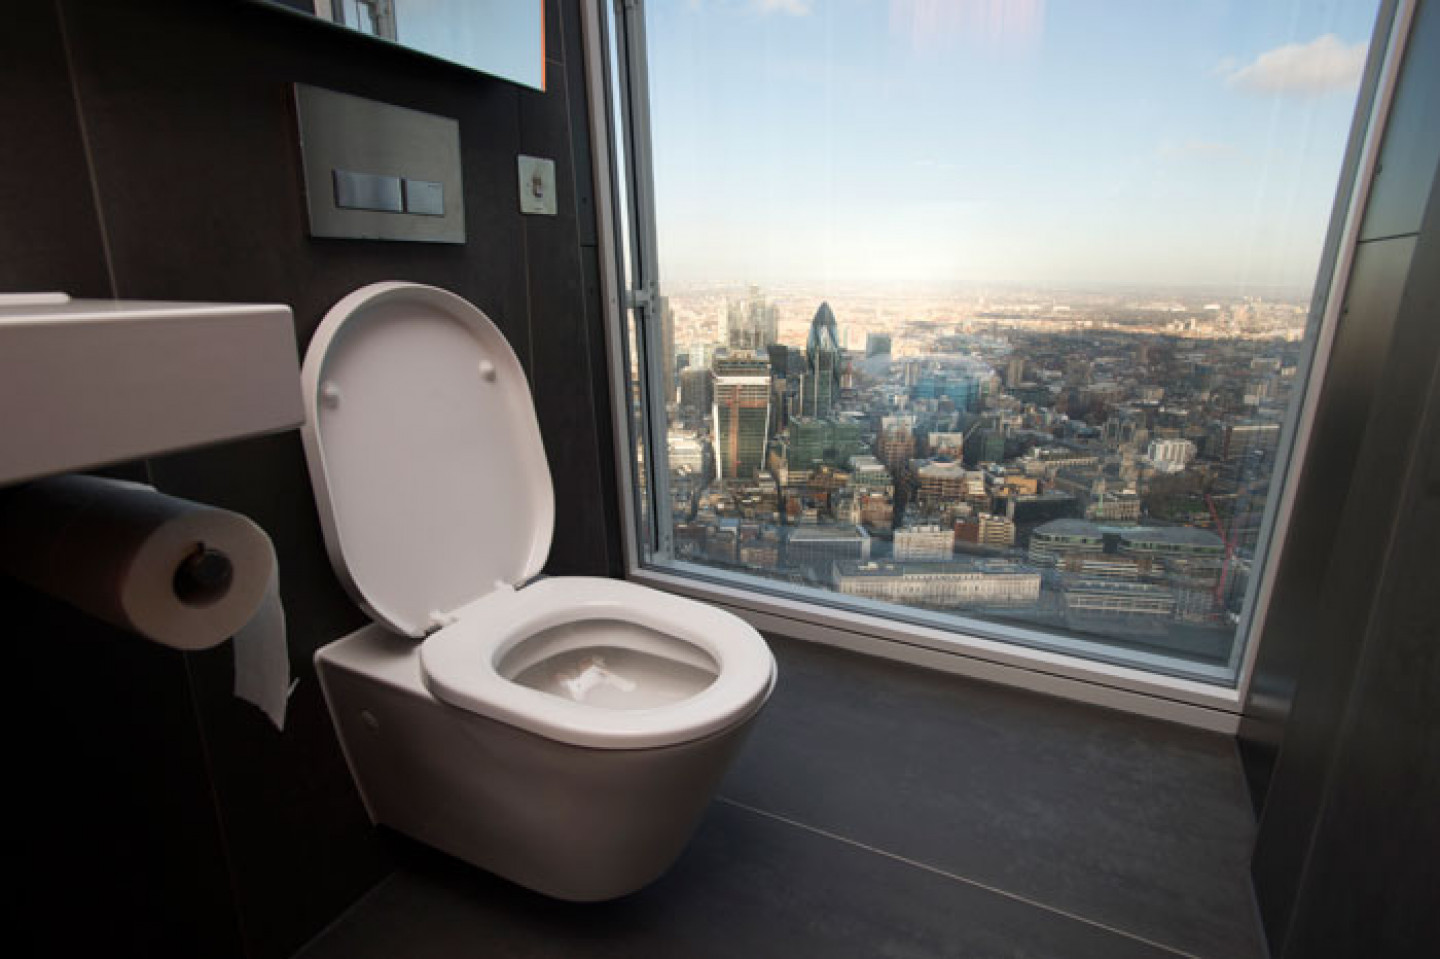 Toilet scene. Туалет с панорамными окнами. Необычные унитазы. Окно в туалете. Виды туалетов.